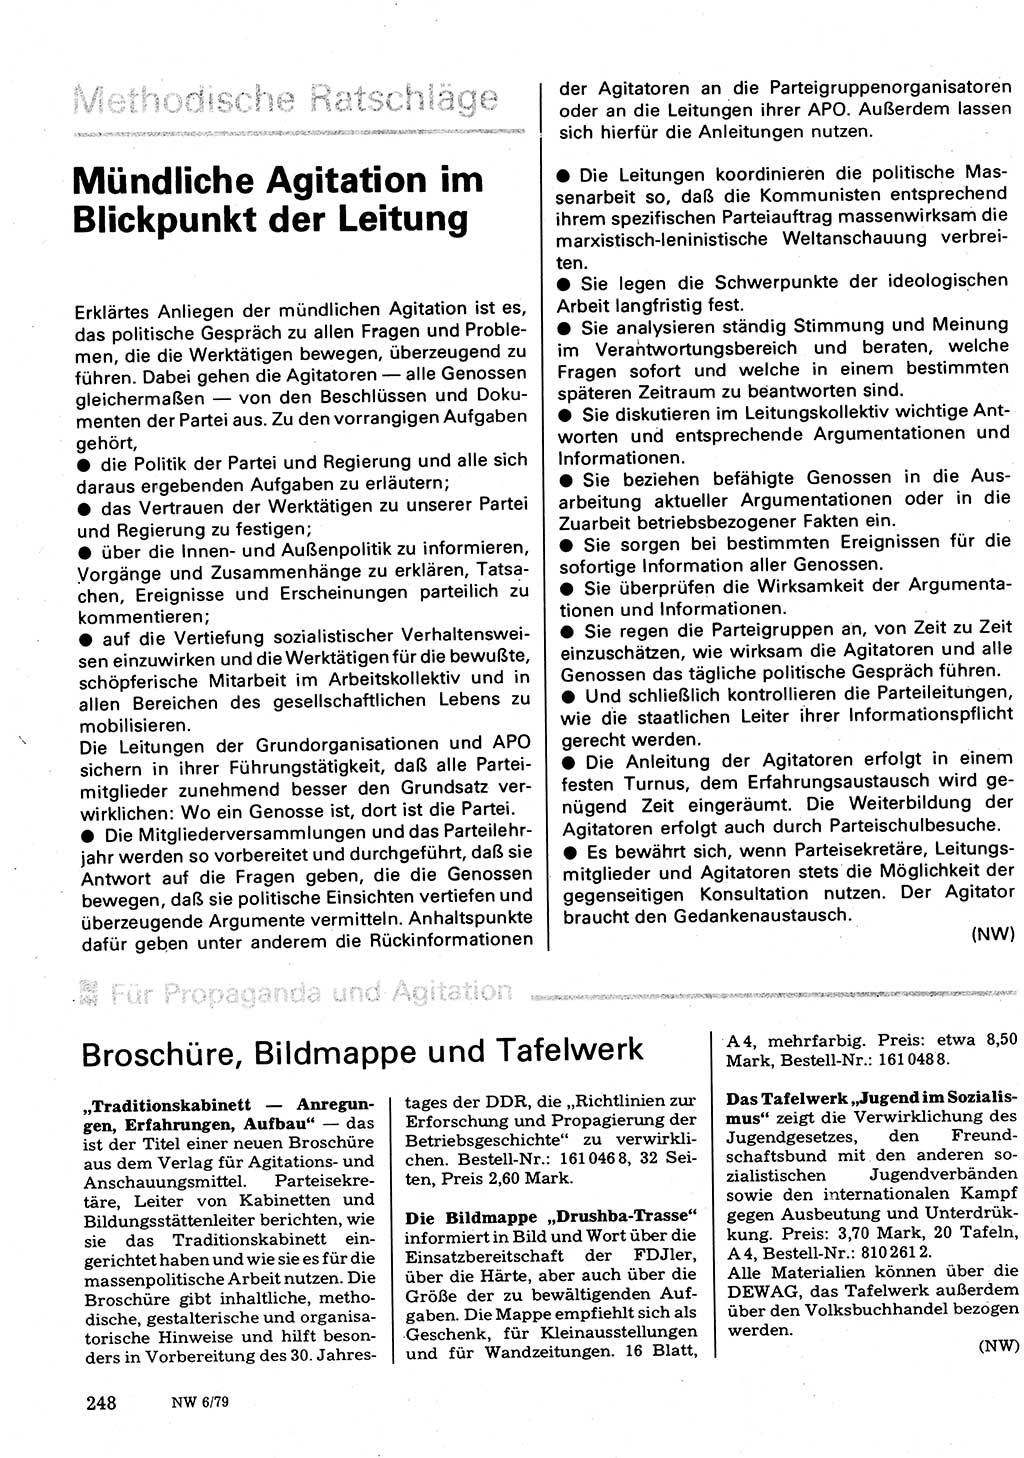 Neuer Weg (NW), Organ des Zentralkomitees (ZK) der SED (Sozialistische Einheitspartei Deutschlands) für Fragen des Parteilebens, 34. Jahrgang [Deutsche Demokratische Republik (DDR)] 1979, Seite 248 (NW ZK SED DDR 1979, S. 248)